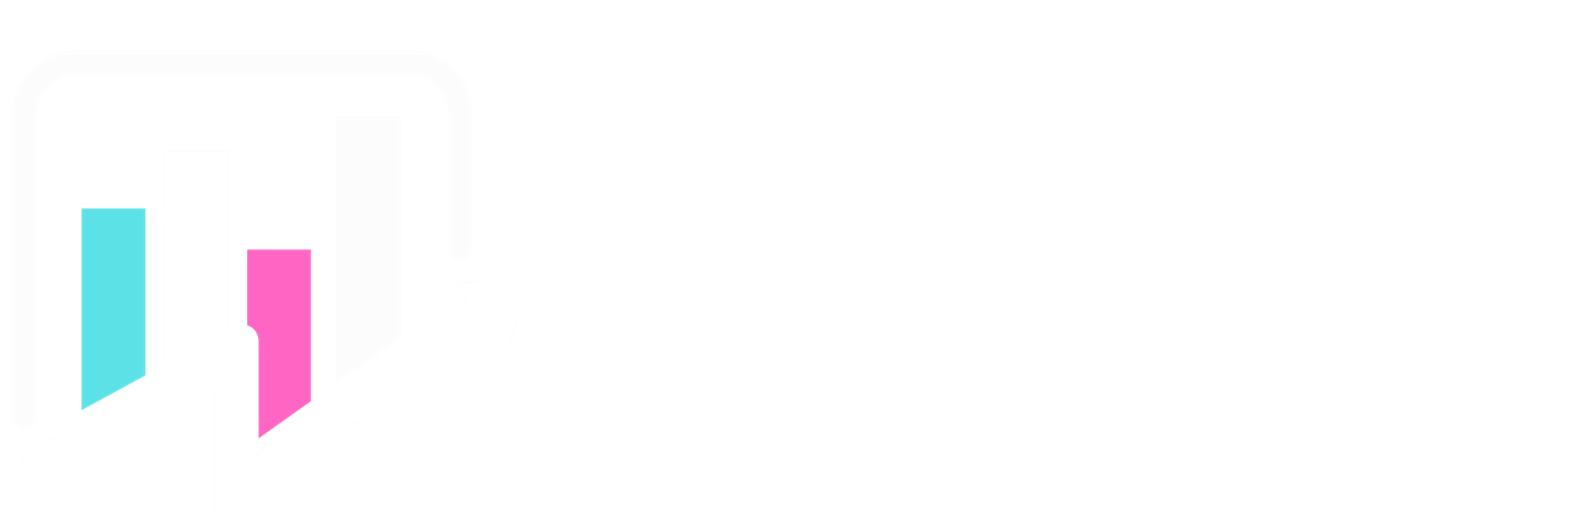 Contábill